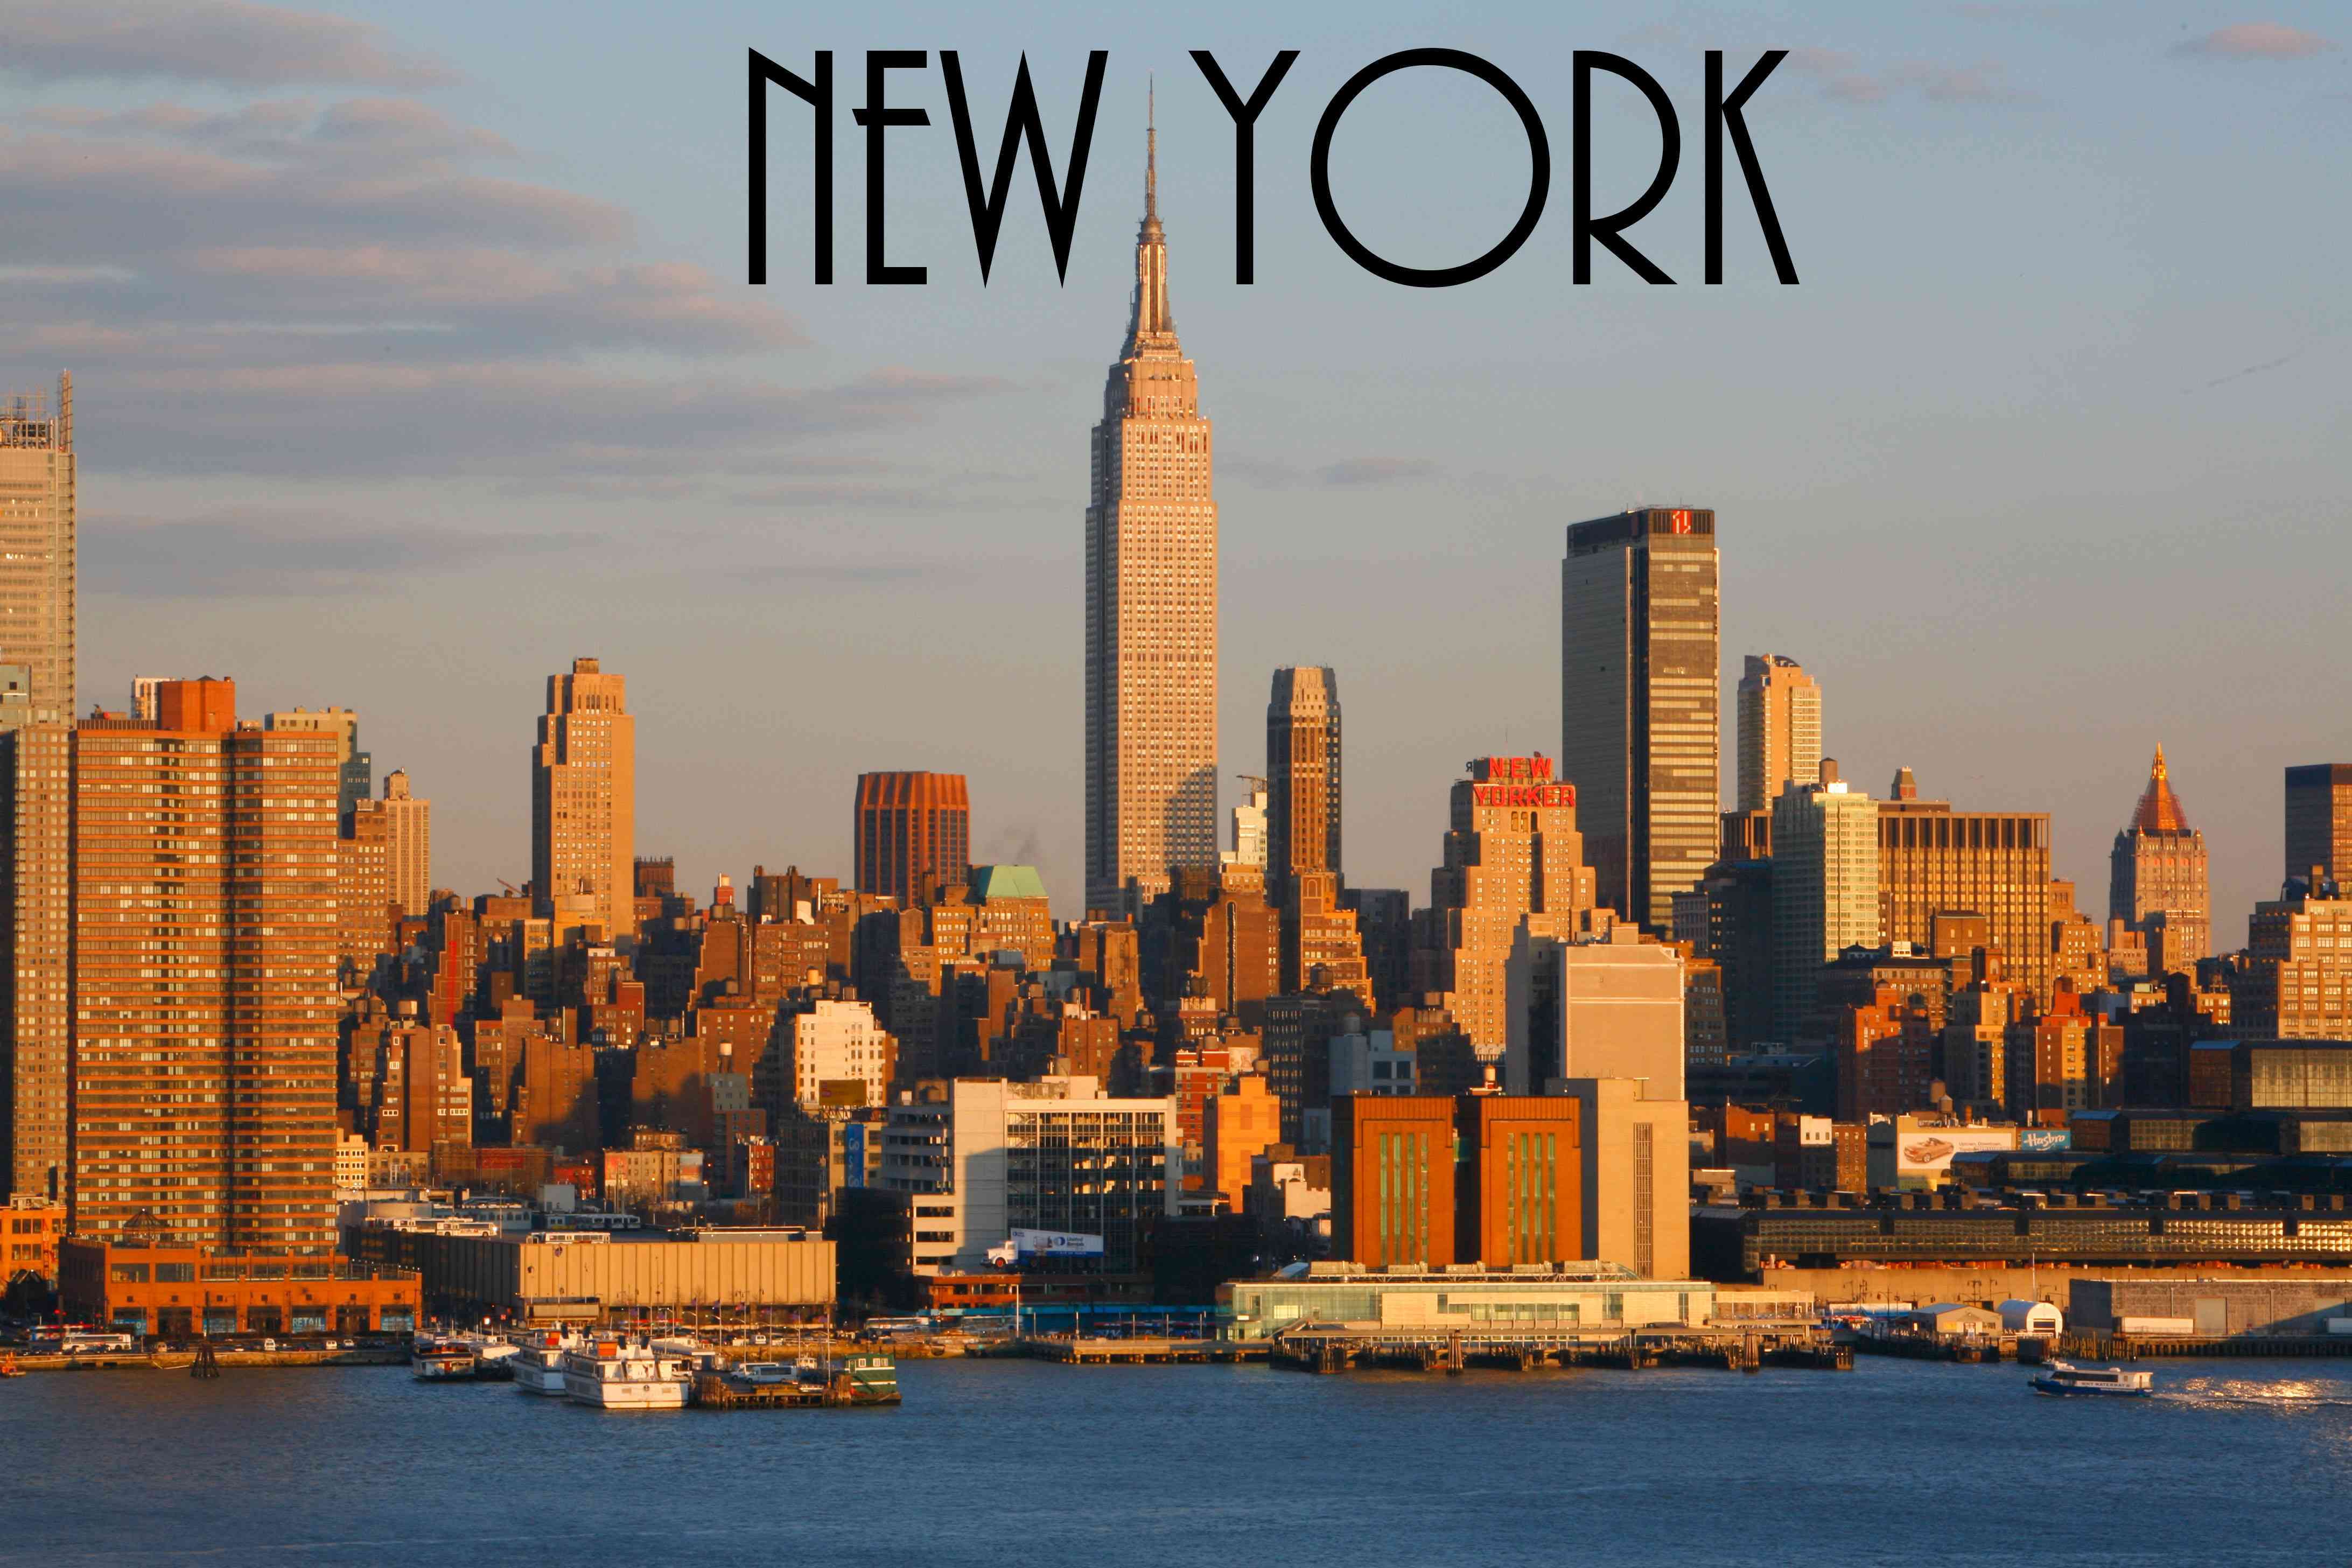 New York trở thành thành phố công nghệ hàng đầu thế giới